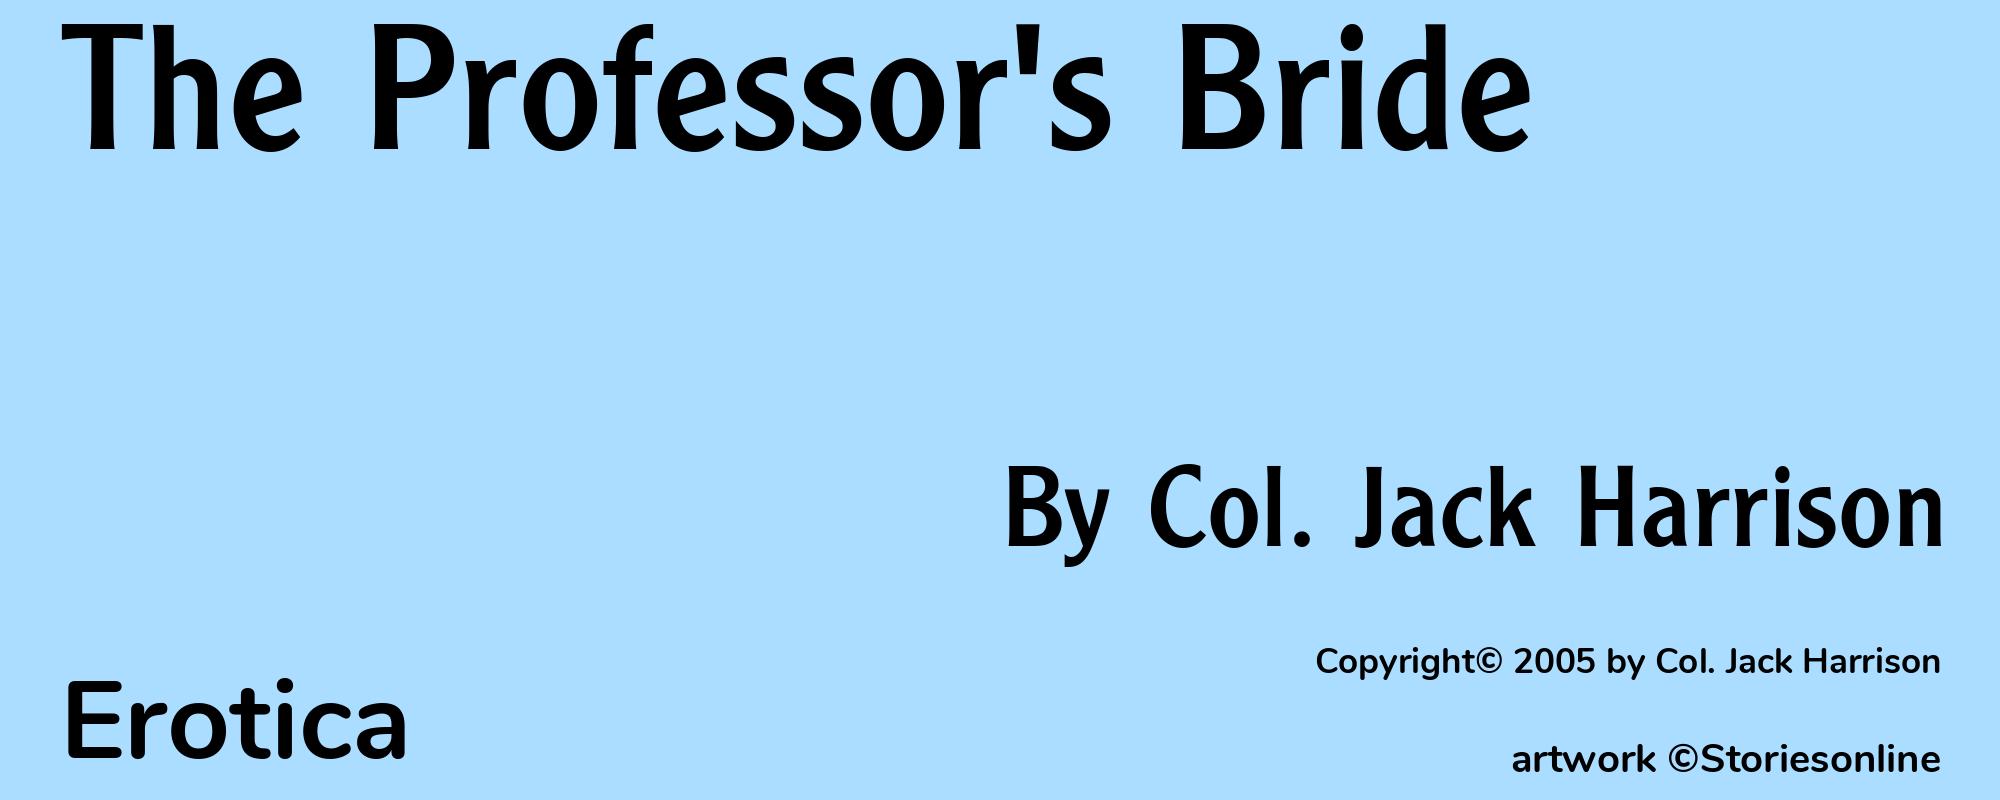 The Professor's Bride - Cover